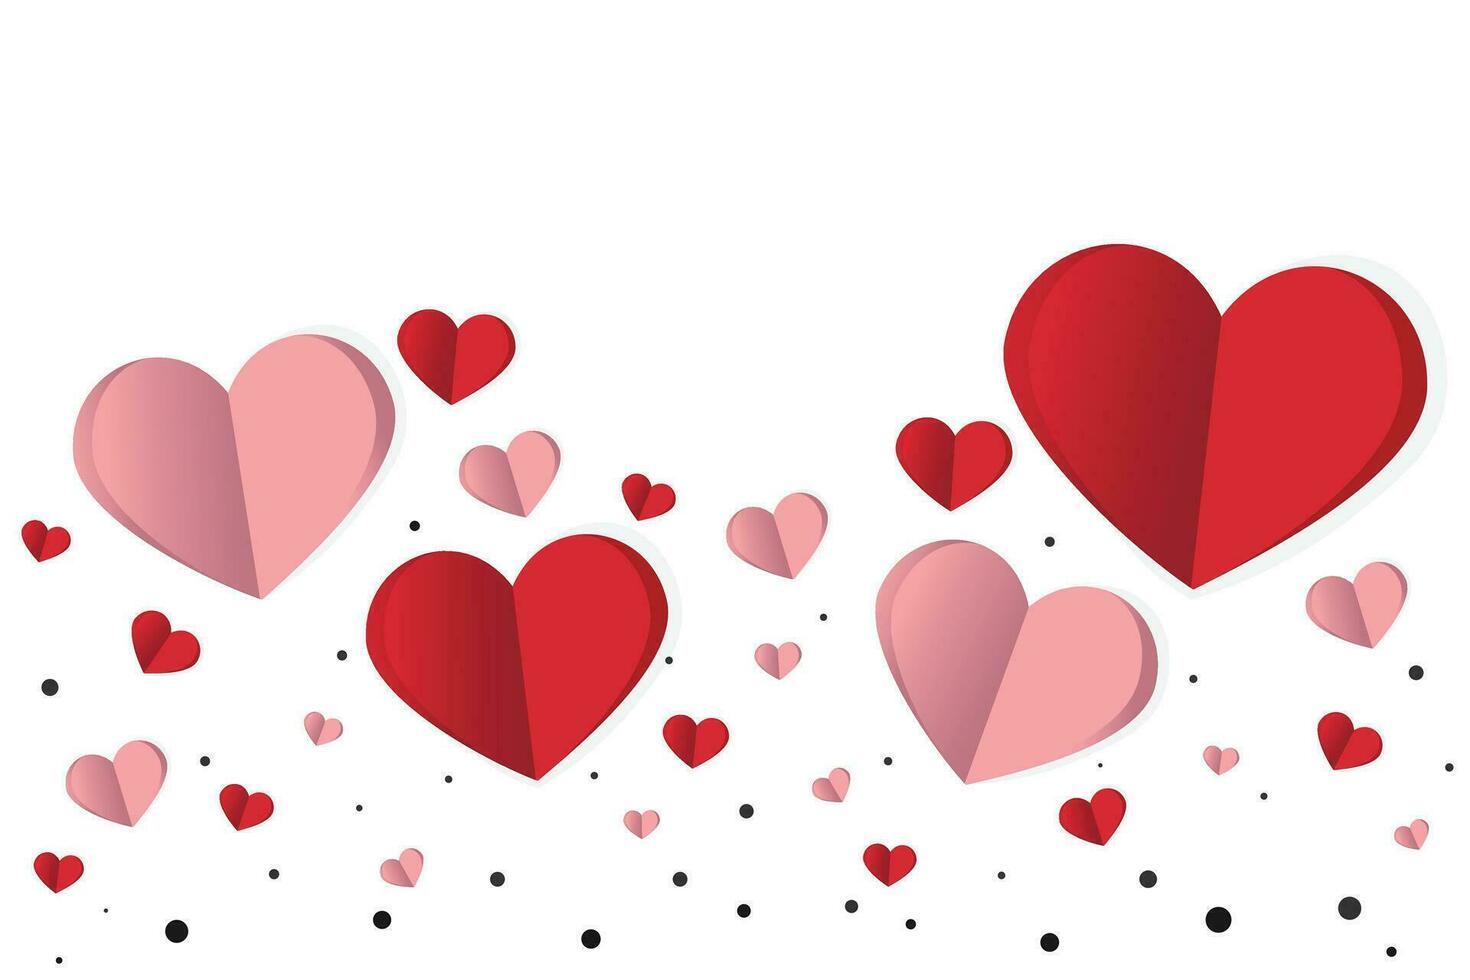 14 febrero, contento enamorado día creativo amor composición de el corazones, papercraft vector